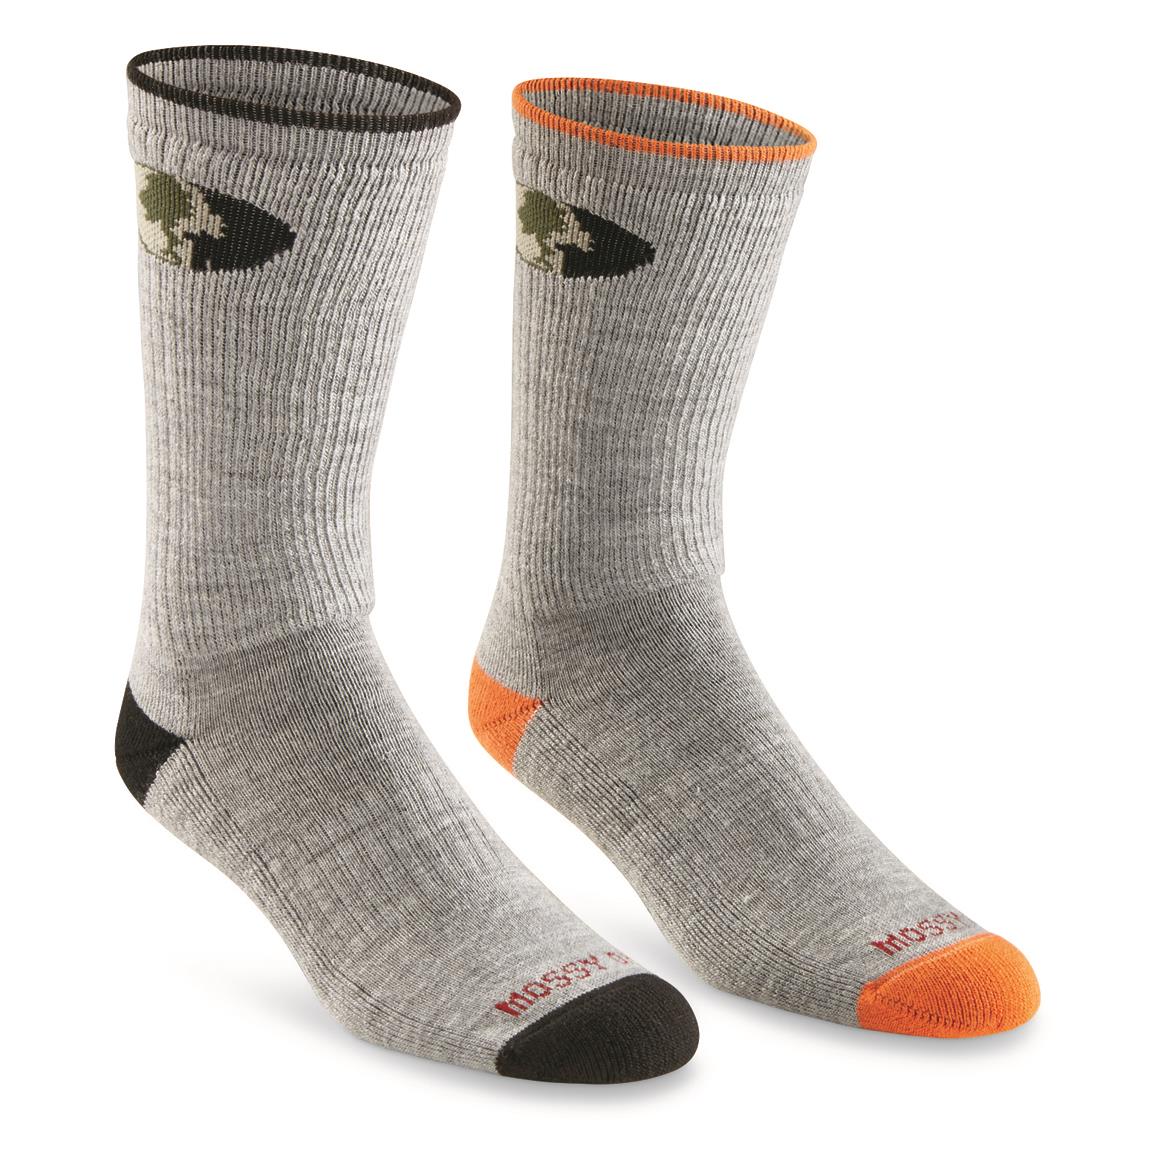 Men's Mossy Oak Boot Socks, 2 pack, Black/orange